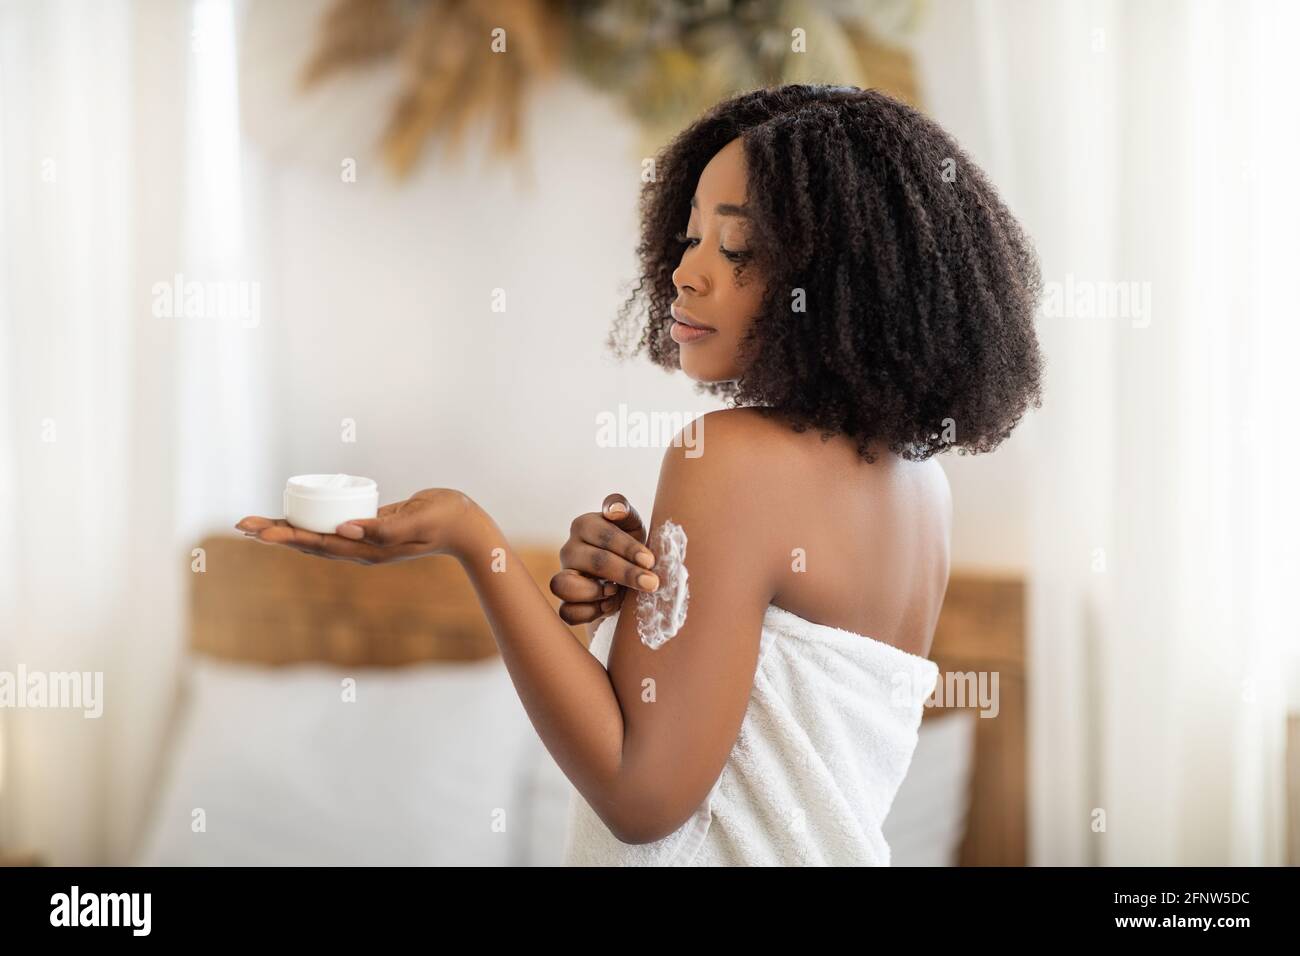 Schönheitsbehandlung für gesunde Haut. Wunderschöne schwarze Frau im  Badetuch Anwendung Körpercreme oder Butter auf der Schulter zu Hause  Stockfotografie - Alamy